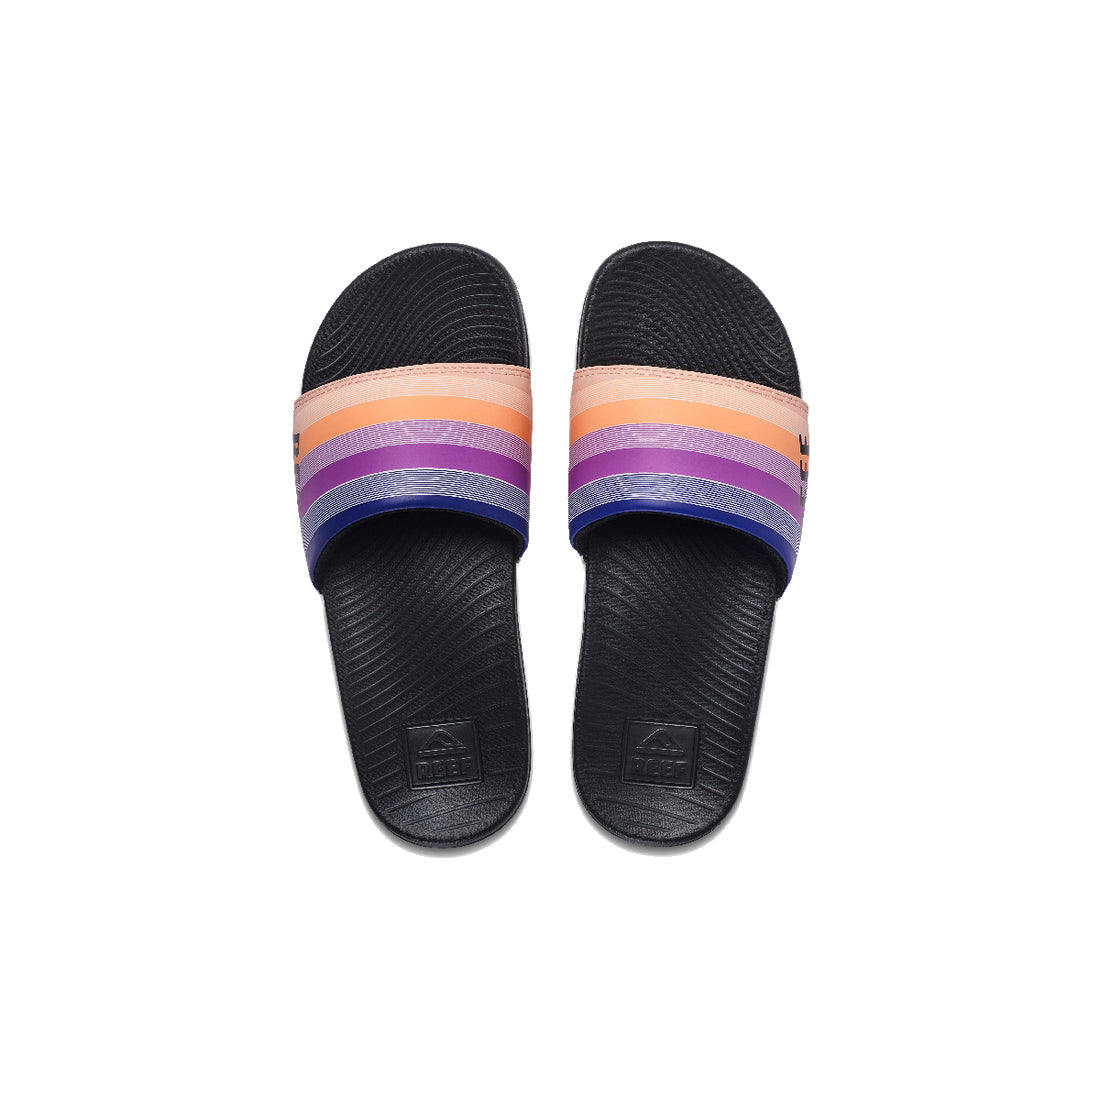 REEF Women's One Slide Sandal - Retro Stripes